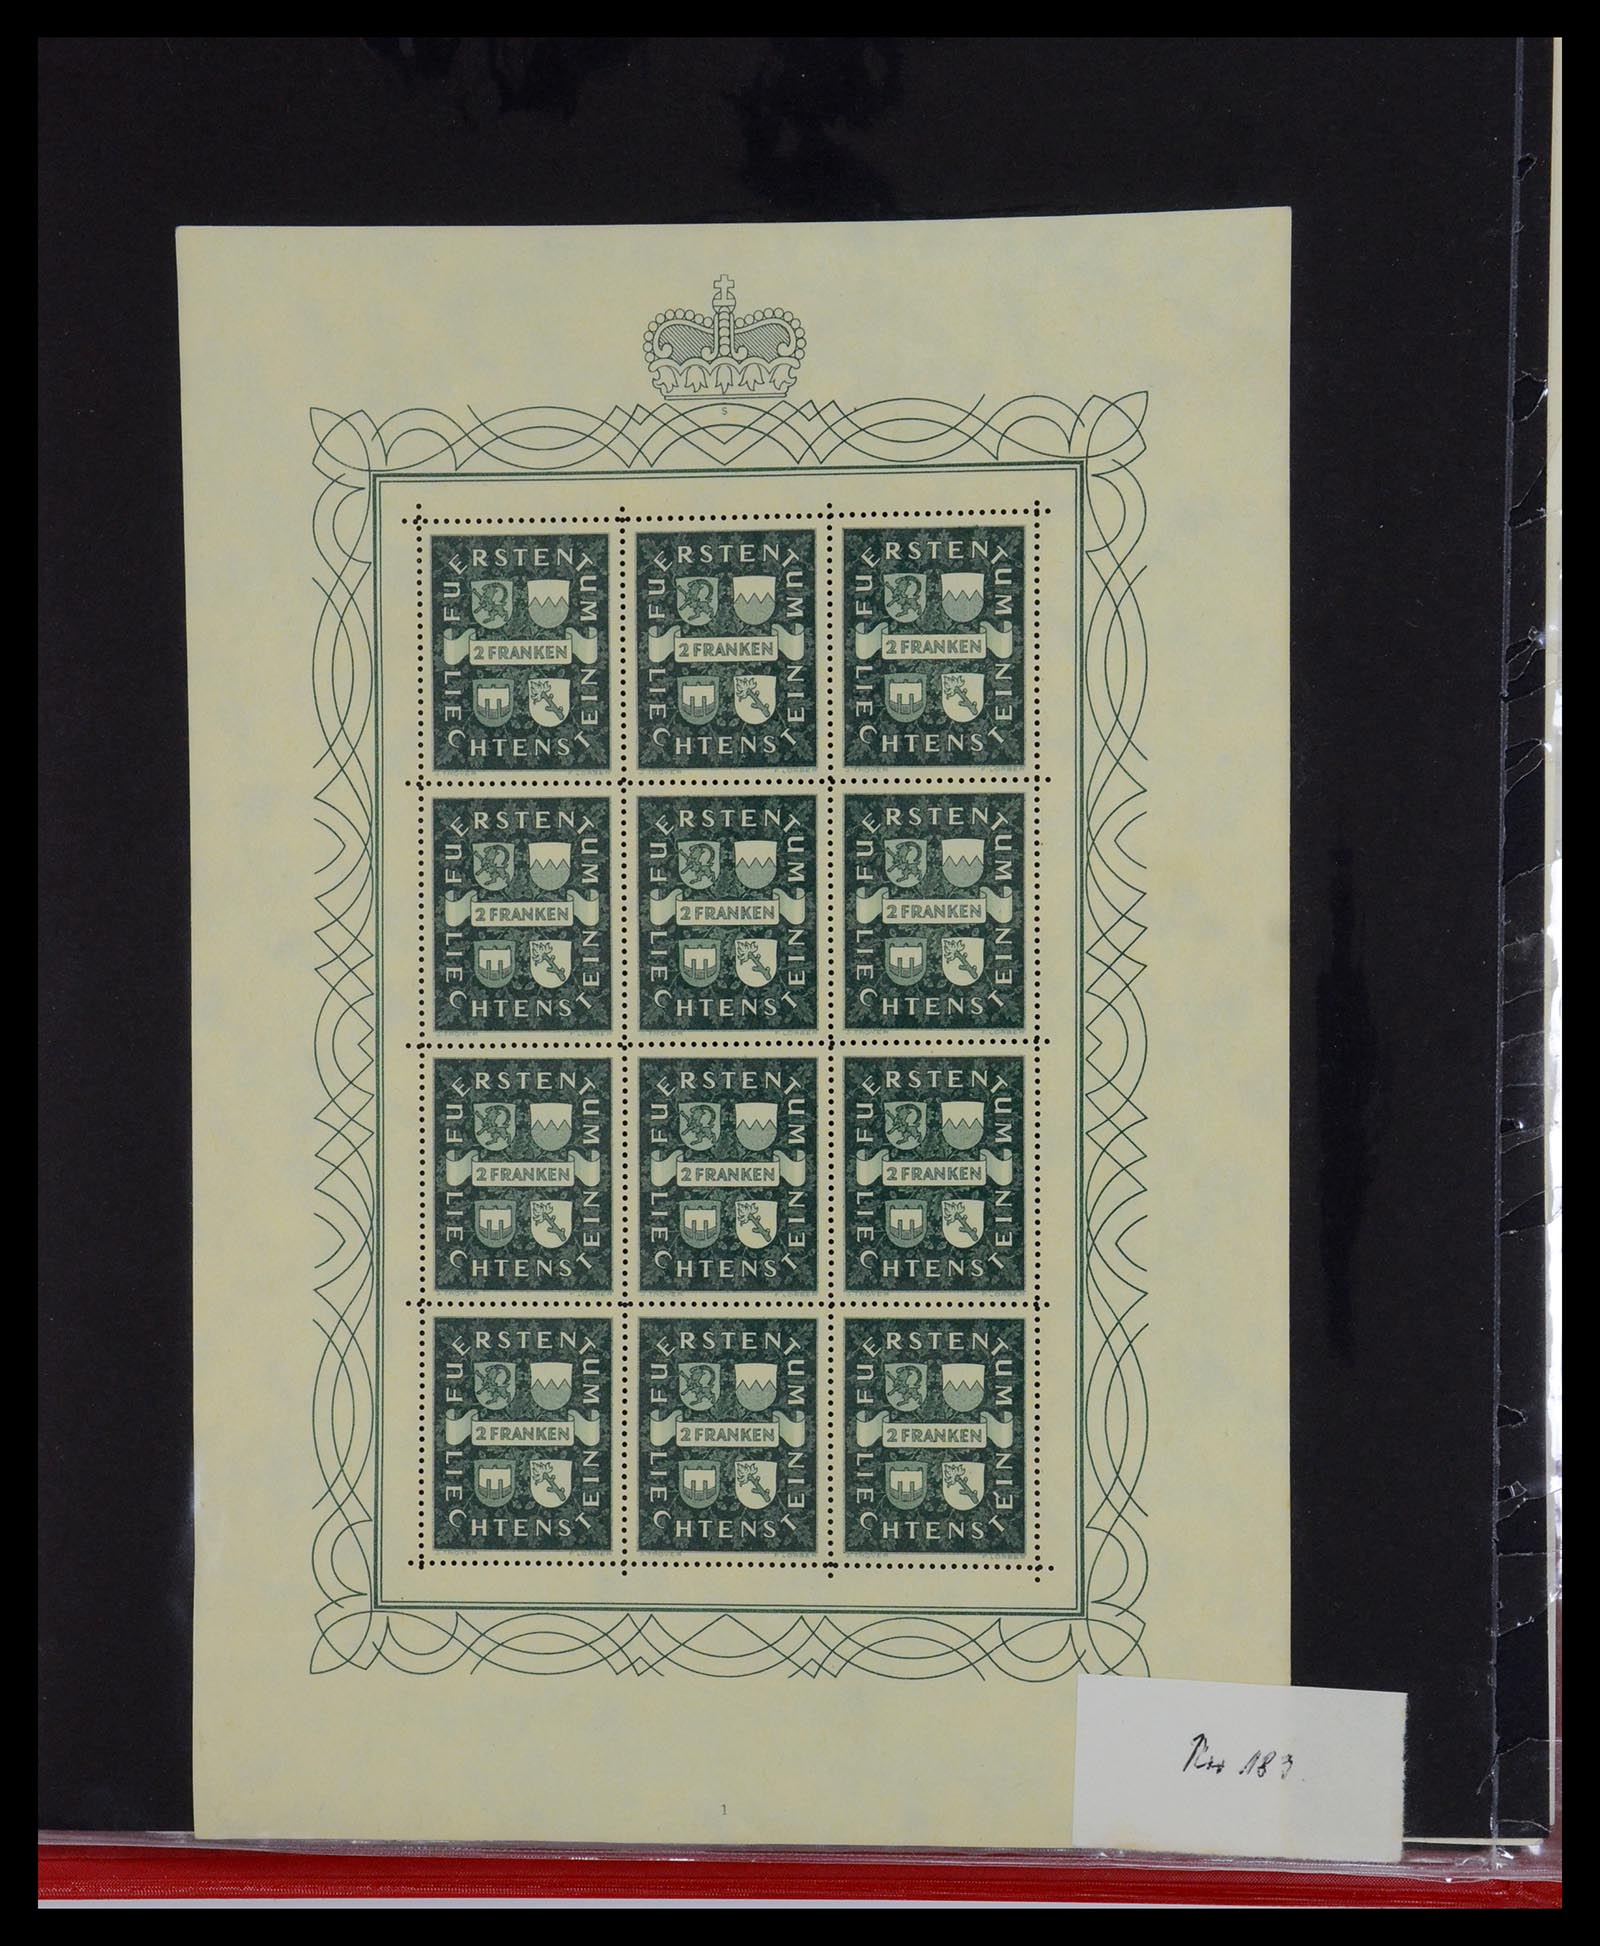 36280 006 - Stamp collection 36280 Liechtenstein souvenir sheets and sheetlets 1934-